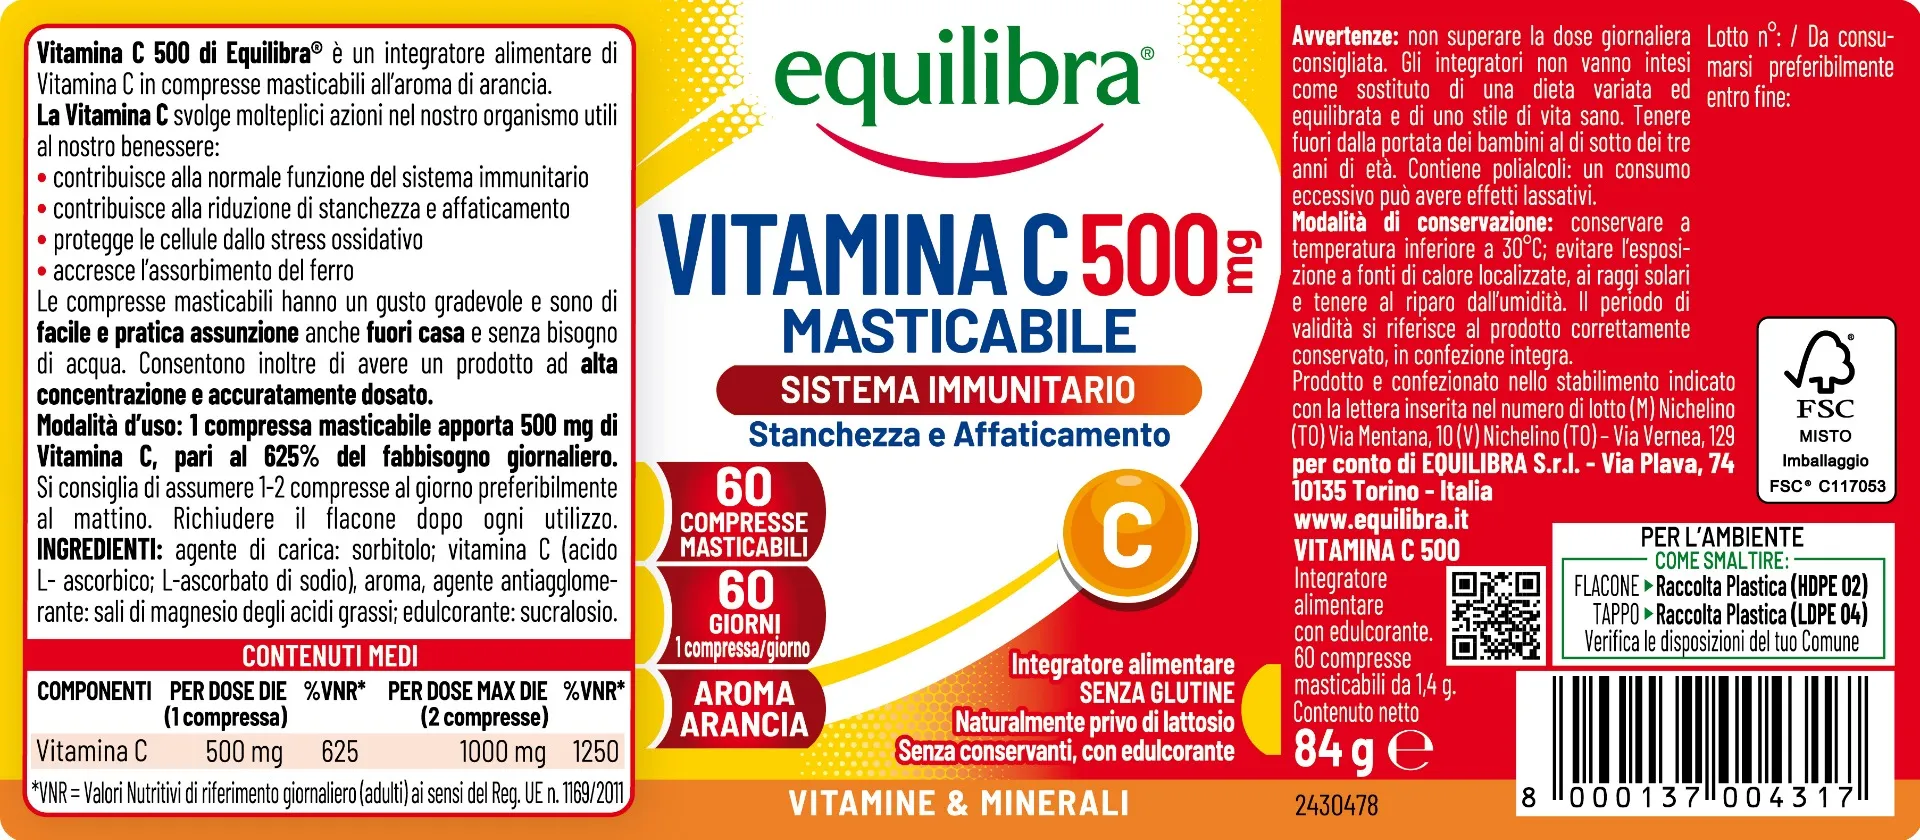 Equilibra Vitamina C 500 mg 60 Compresse Masticabili Integratore per Sistema Immunitario